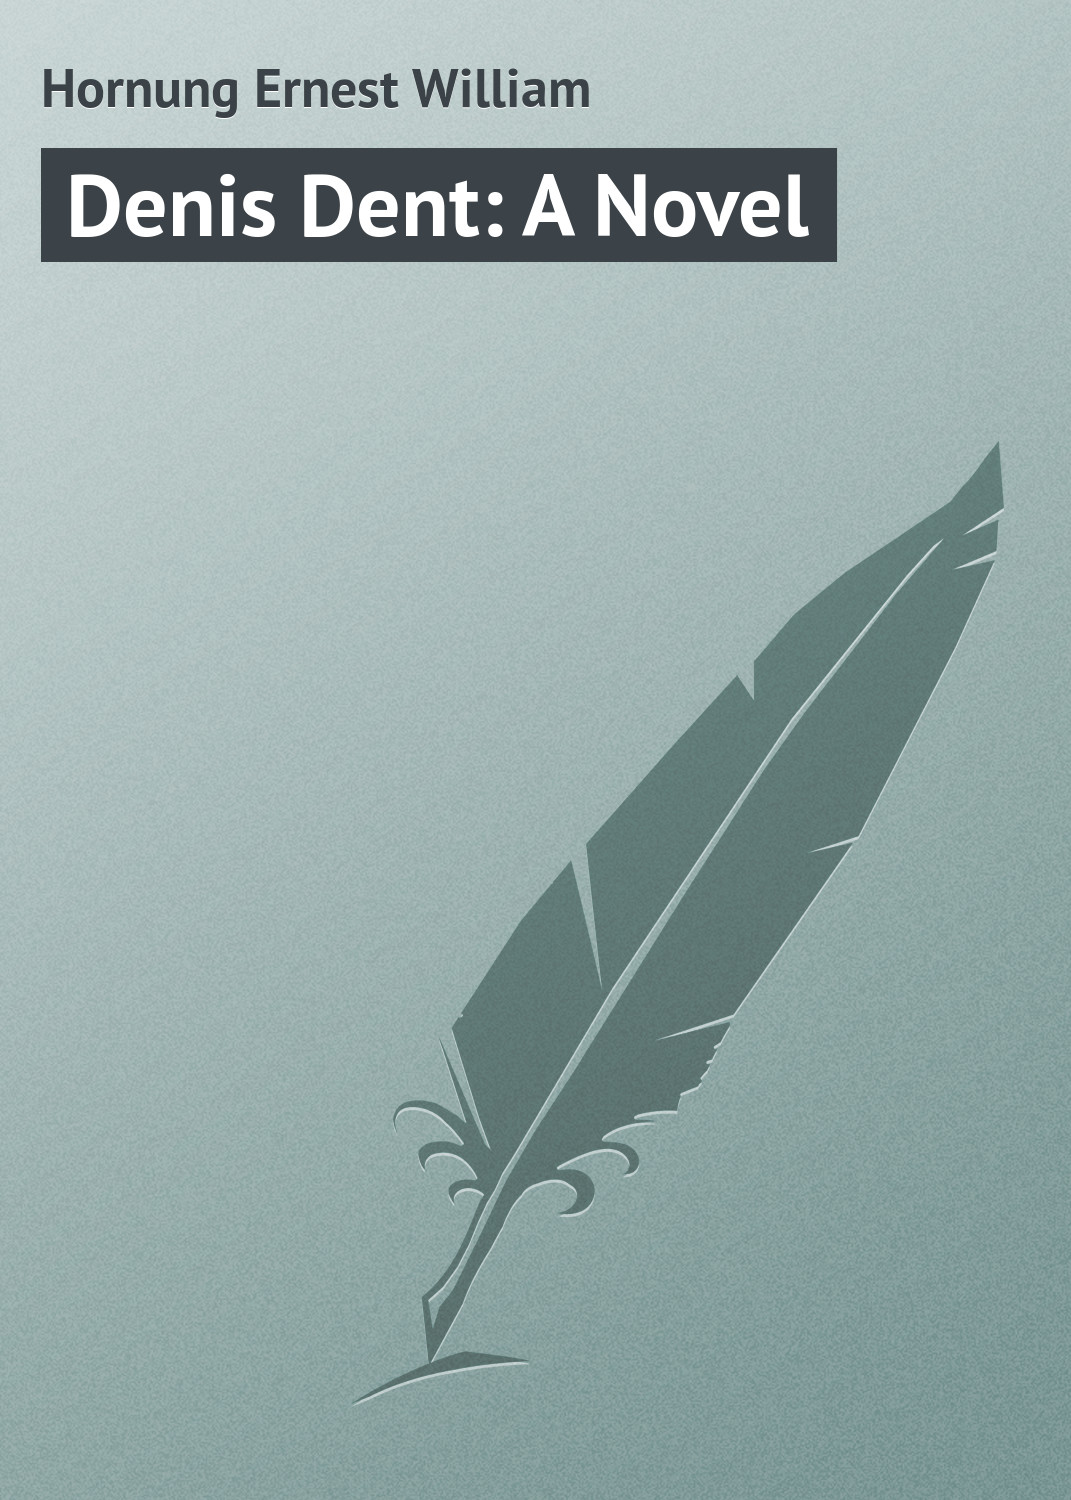 Книга Denis Dent: A Novel из серии , созданная Ernest Hornung, может относится к жанру Зарубежная классика. Стоимость электронной книги Denis Dent: A Novel с идентификатором 23154907 составляет 5.99 руб.